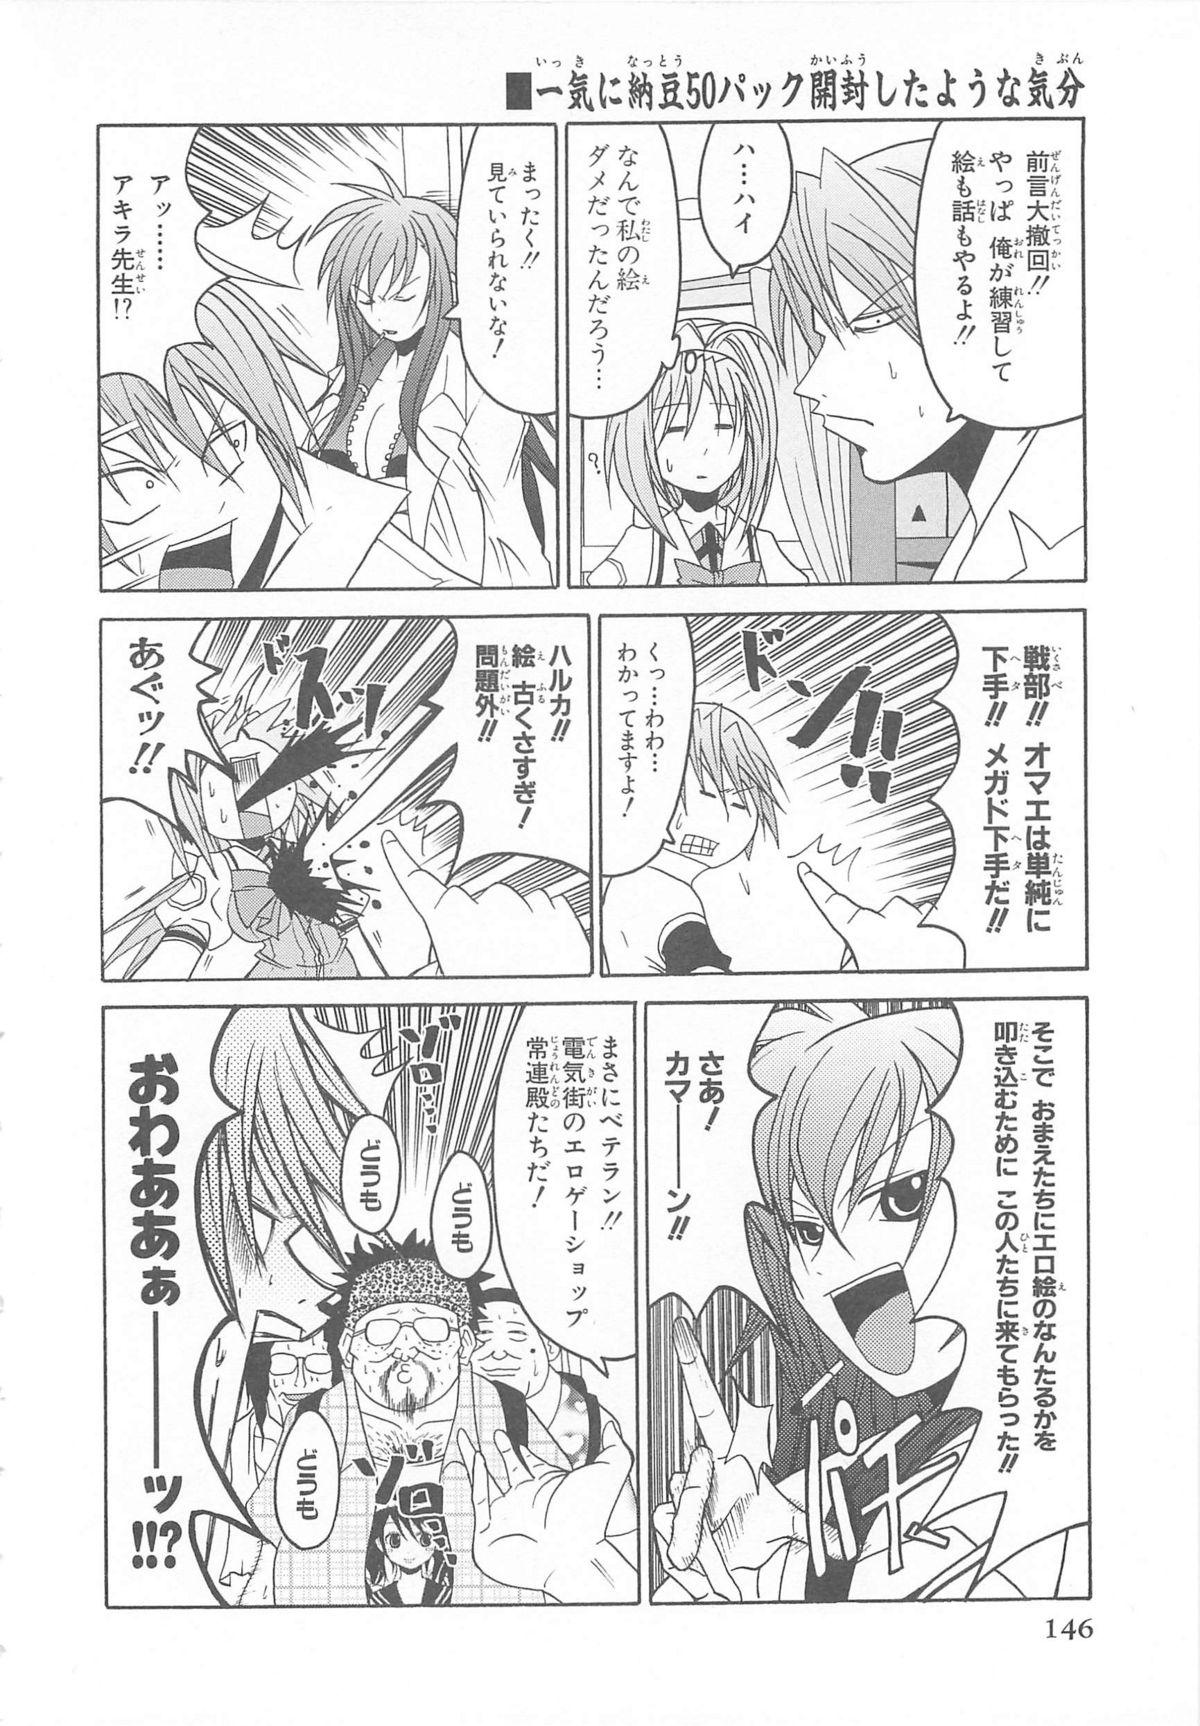 Choukou Sennin Haruka Comic Anthology Vol.1 146